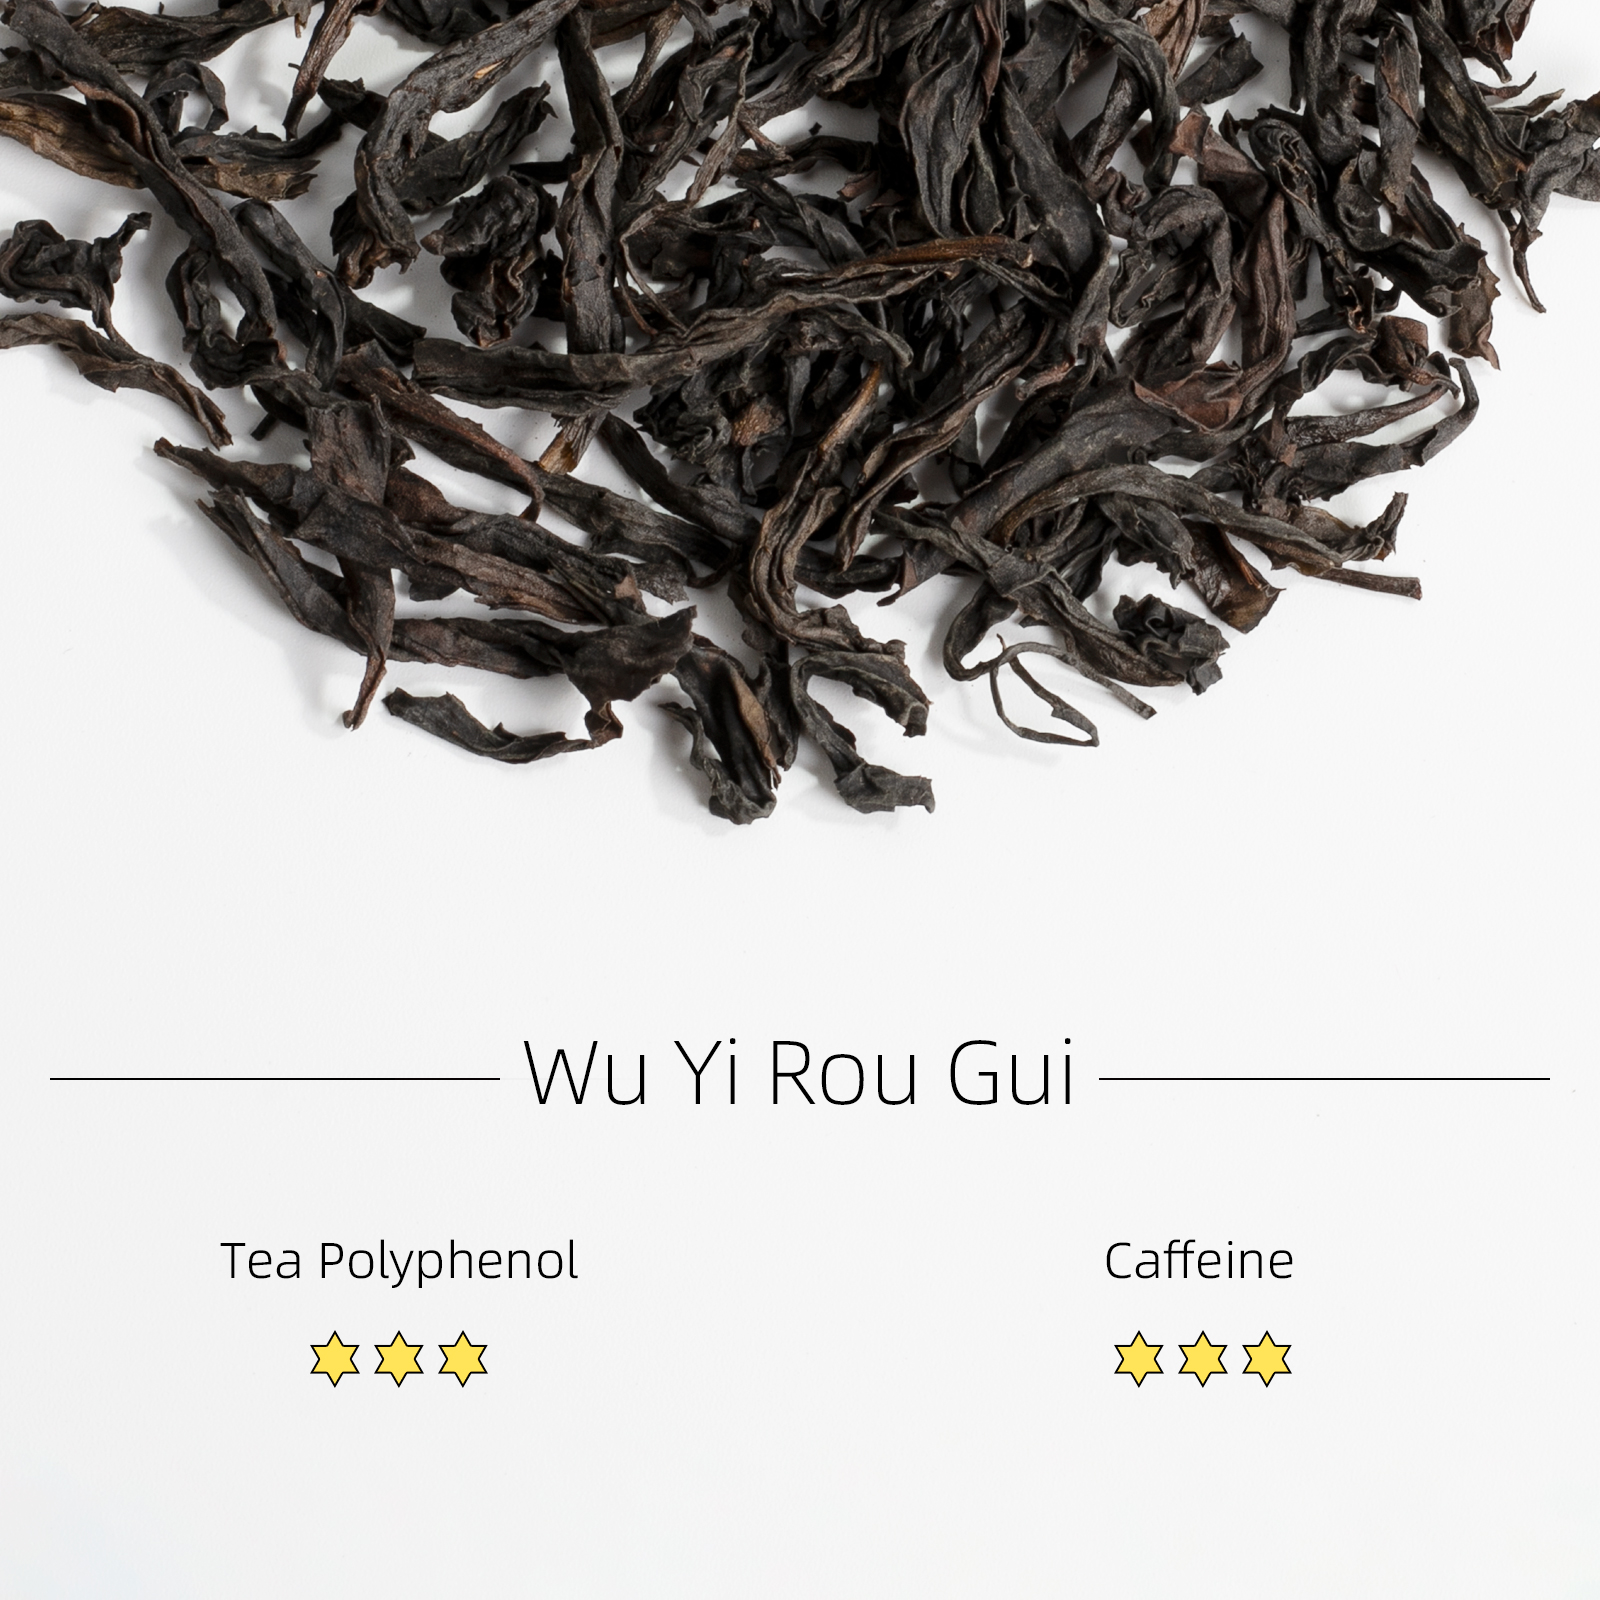 Wu Yi Rou Gui